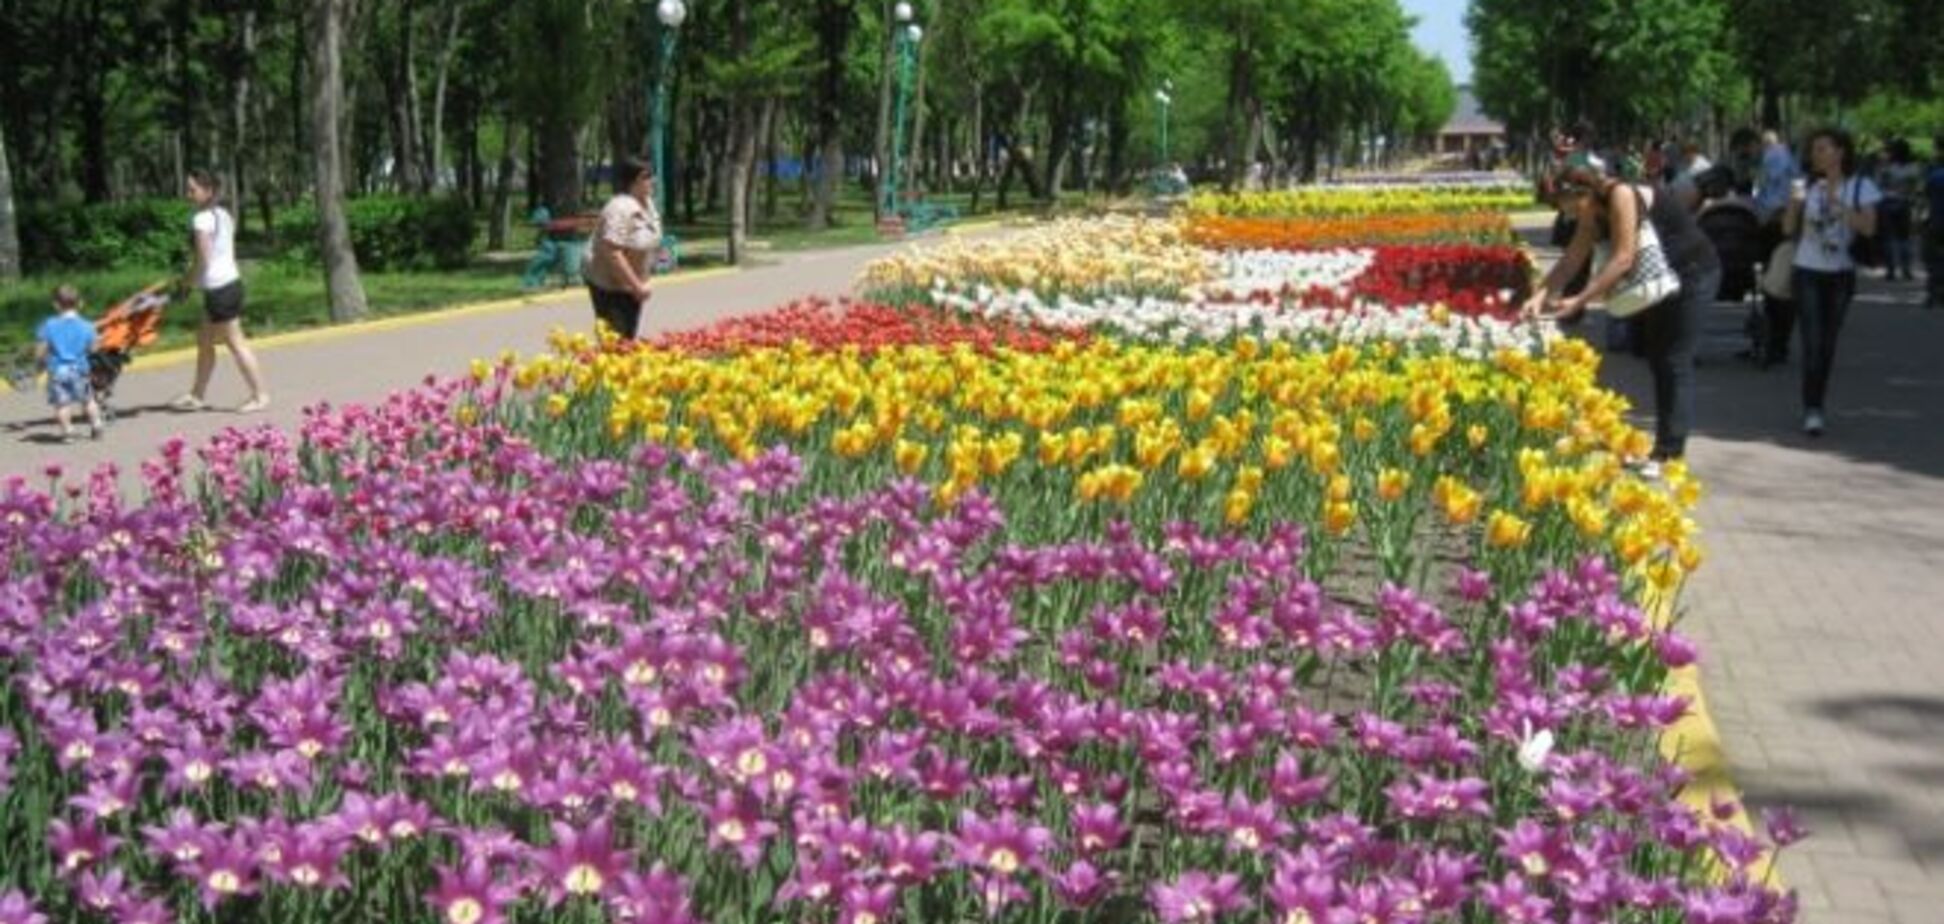 Лучшие места Украины для весеннего отдыха: долина нарциссов на Закарпатье и сиреневый гай в Диканьке